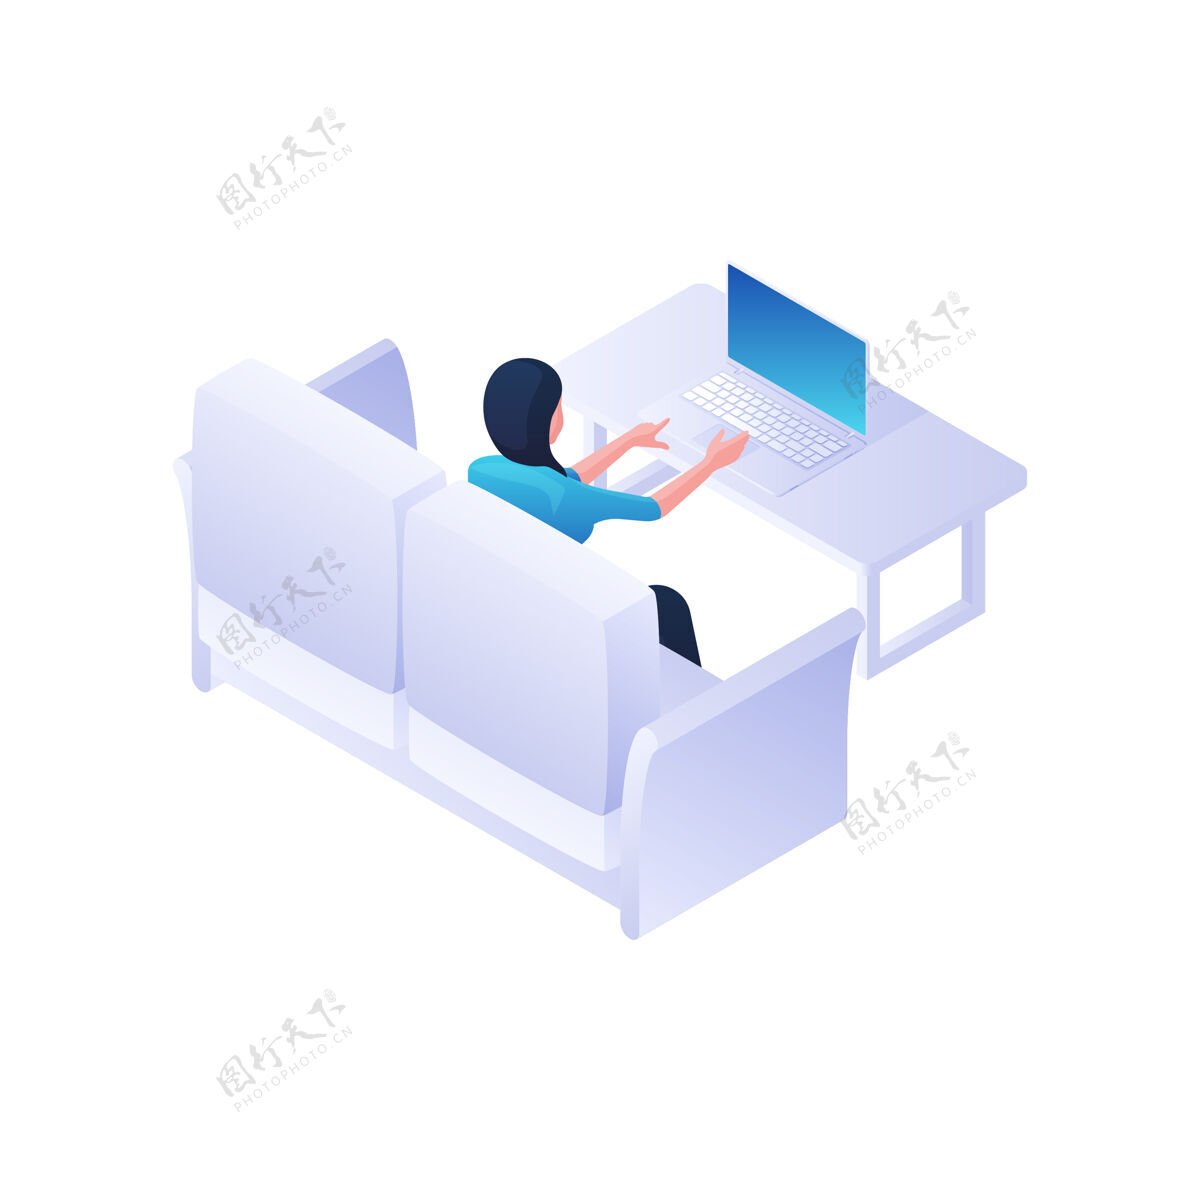 人在家里用笔记本电脑工作的女人插图.女性角色正坐在白色沙发上 静静地在笔记本电脑上打字餐桌舒适家庭自由职业者和放松的环境概念小玩意工作生活